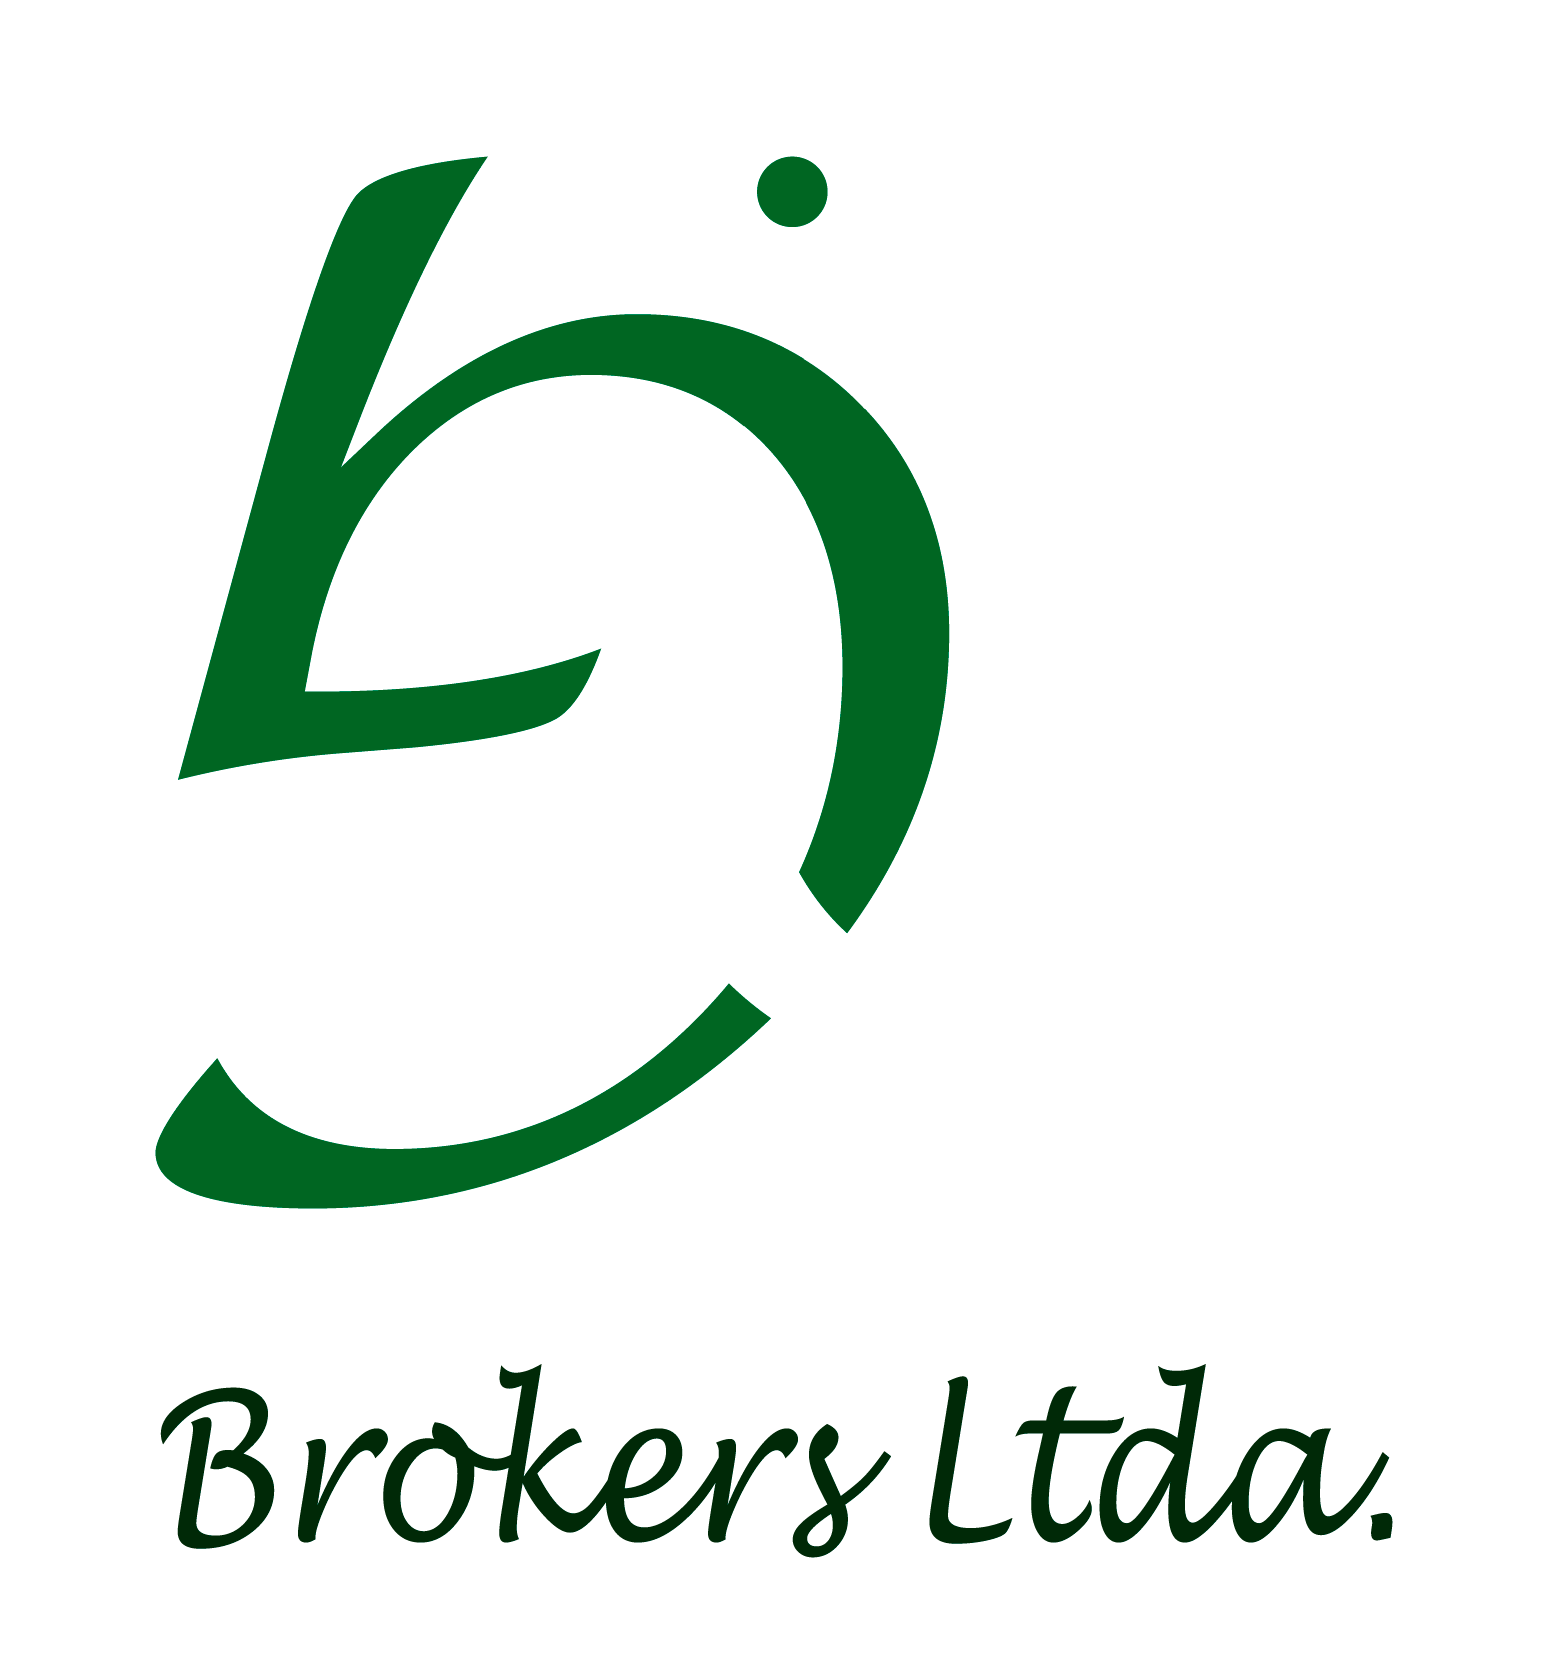 G&G Brokers